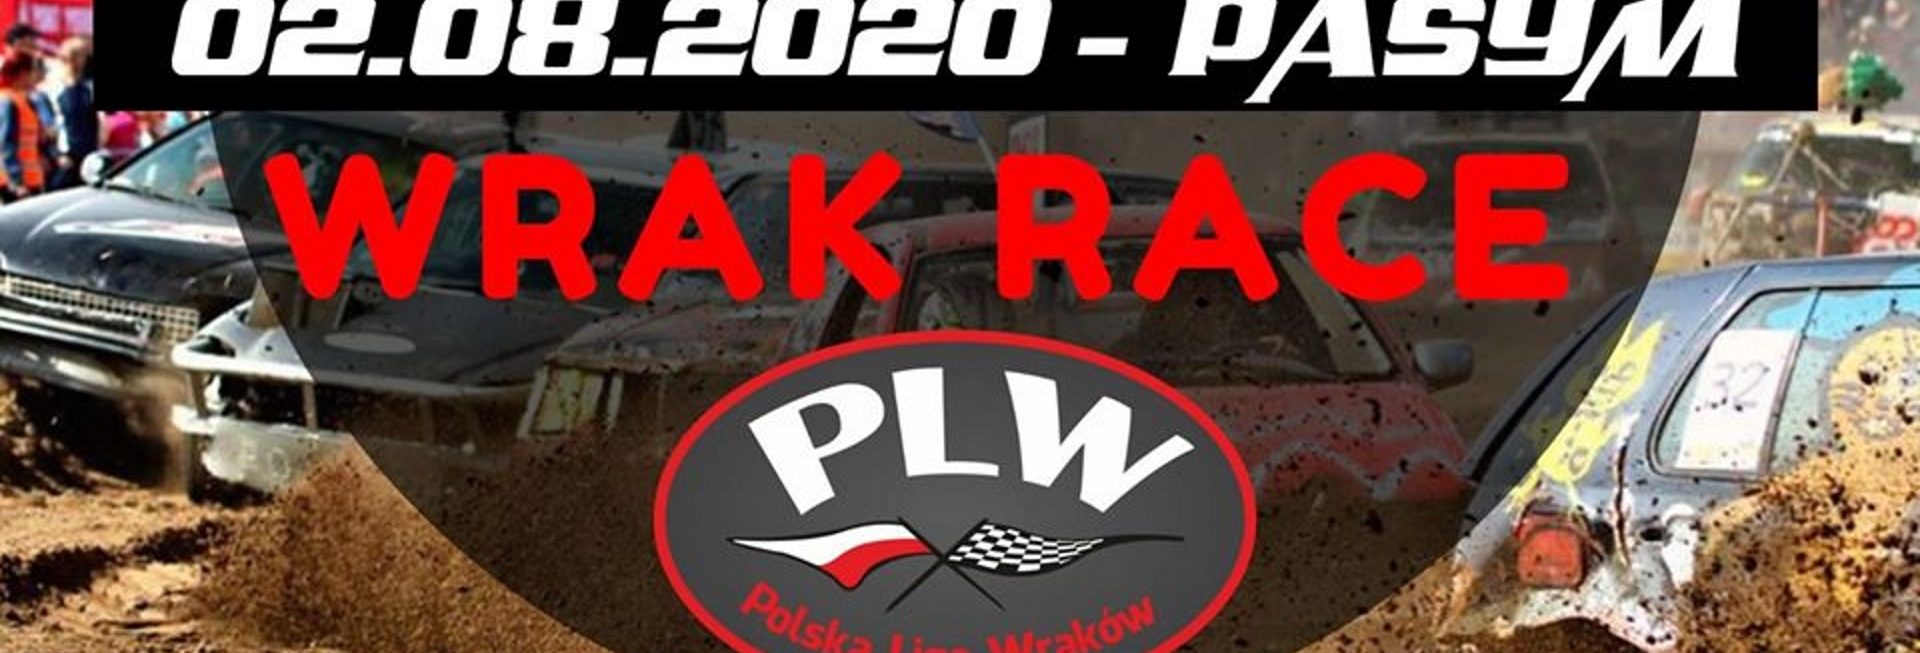 Plakat zapraszający do Pasymia na III Rundę 2020 Polskiej Ligi Wraków - Pasym 2020.  Tłem plakatu jest zdjęcie jadących po błotnistym torze wraków. Na plakacie informacja o dacie i miejscu zawodach. 